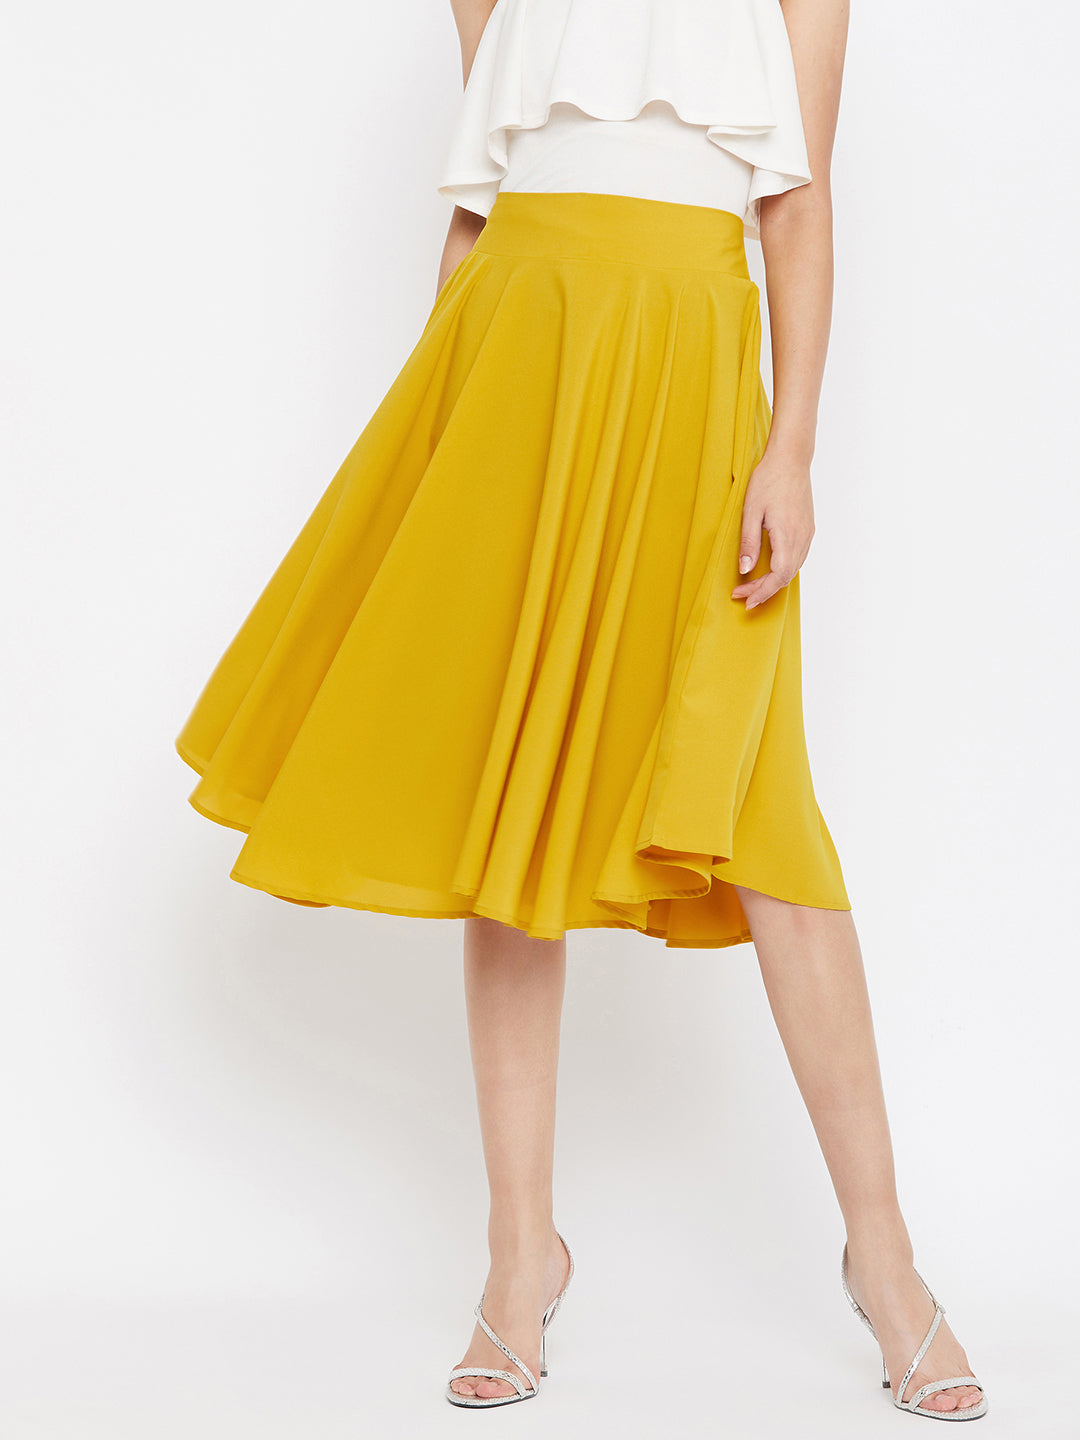 High Waist Midi Yellow Skirt  Midi flare skirt, Skirt outfits, Yellow  skirt outfits